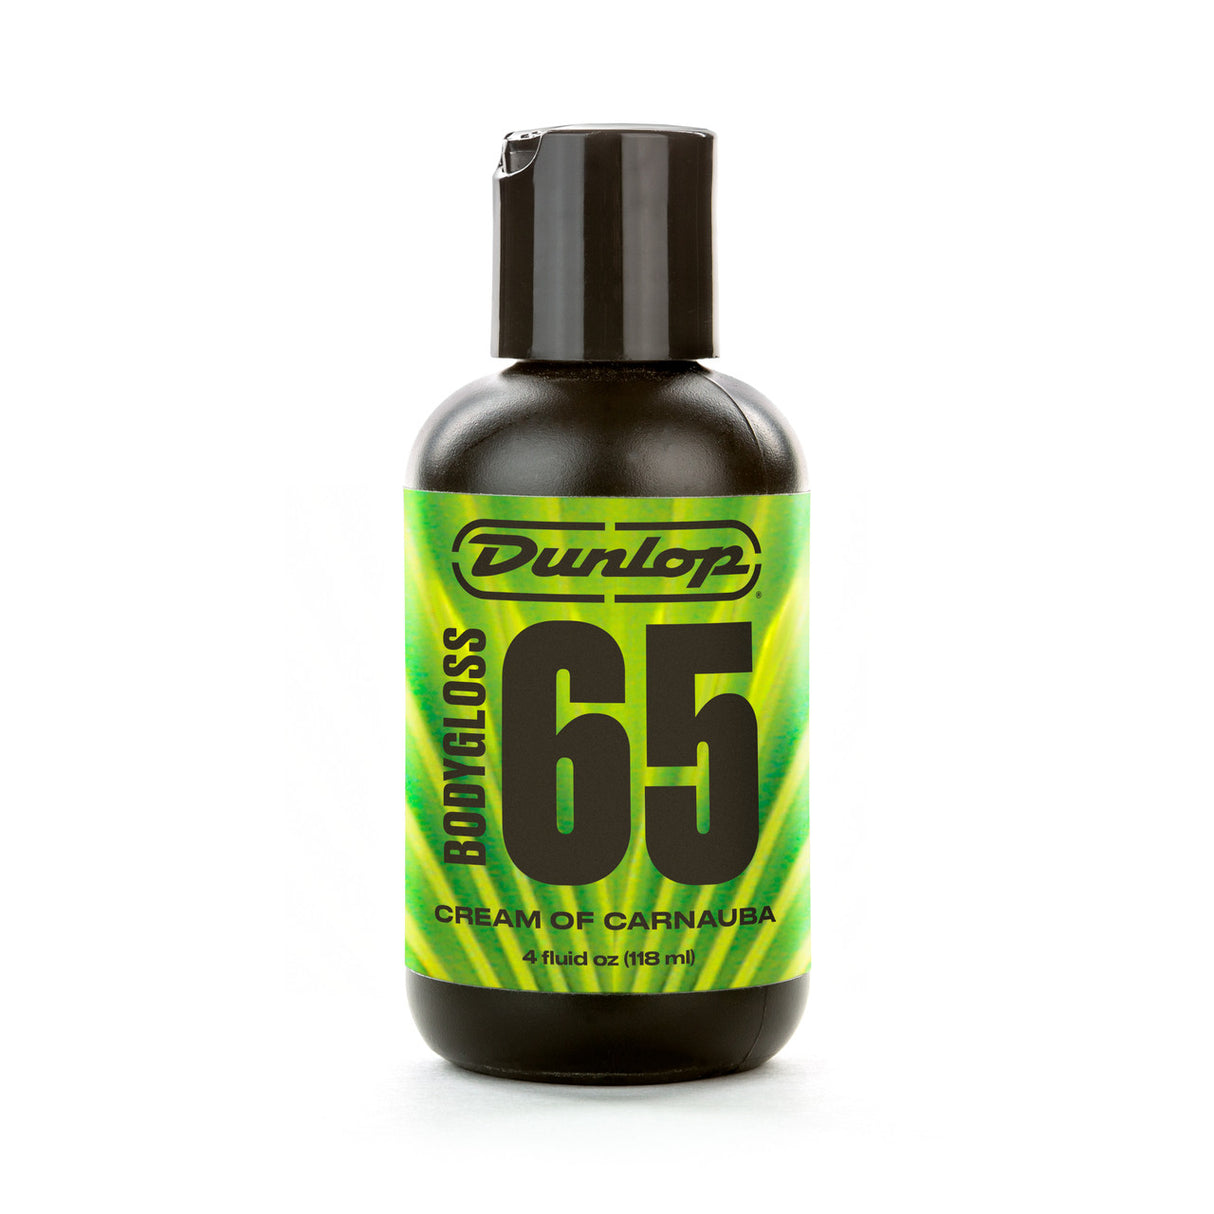 Dunlop 6574 Bodygloss Cream of Carnuba - 4oz